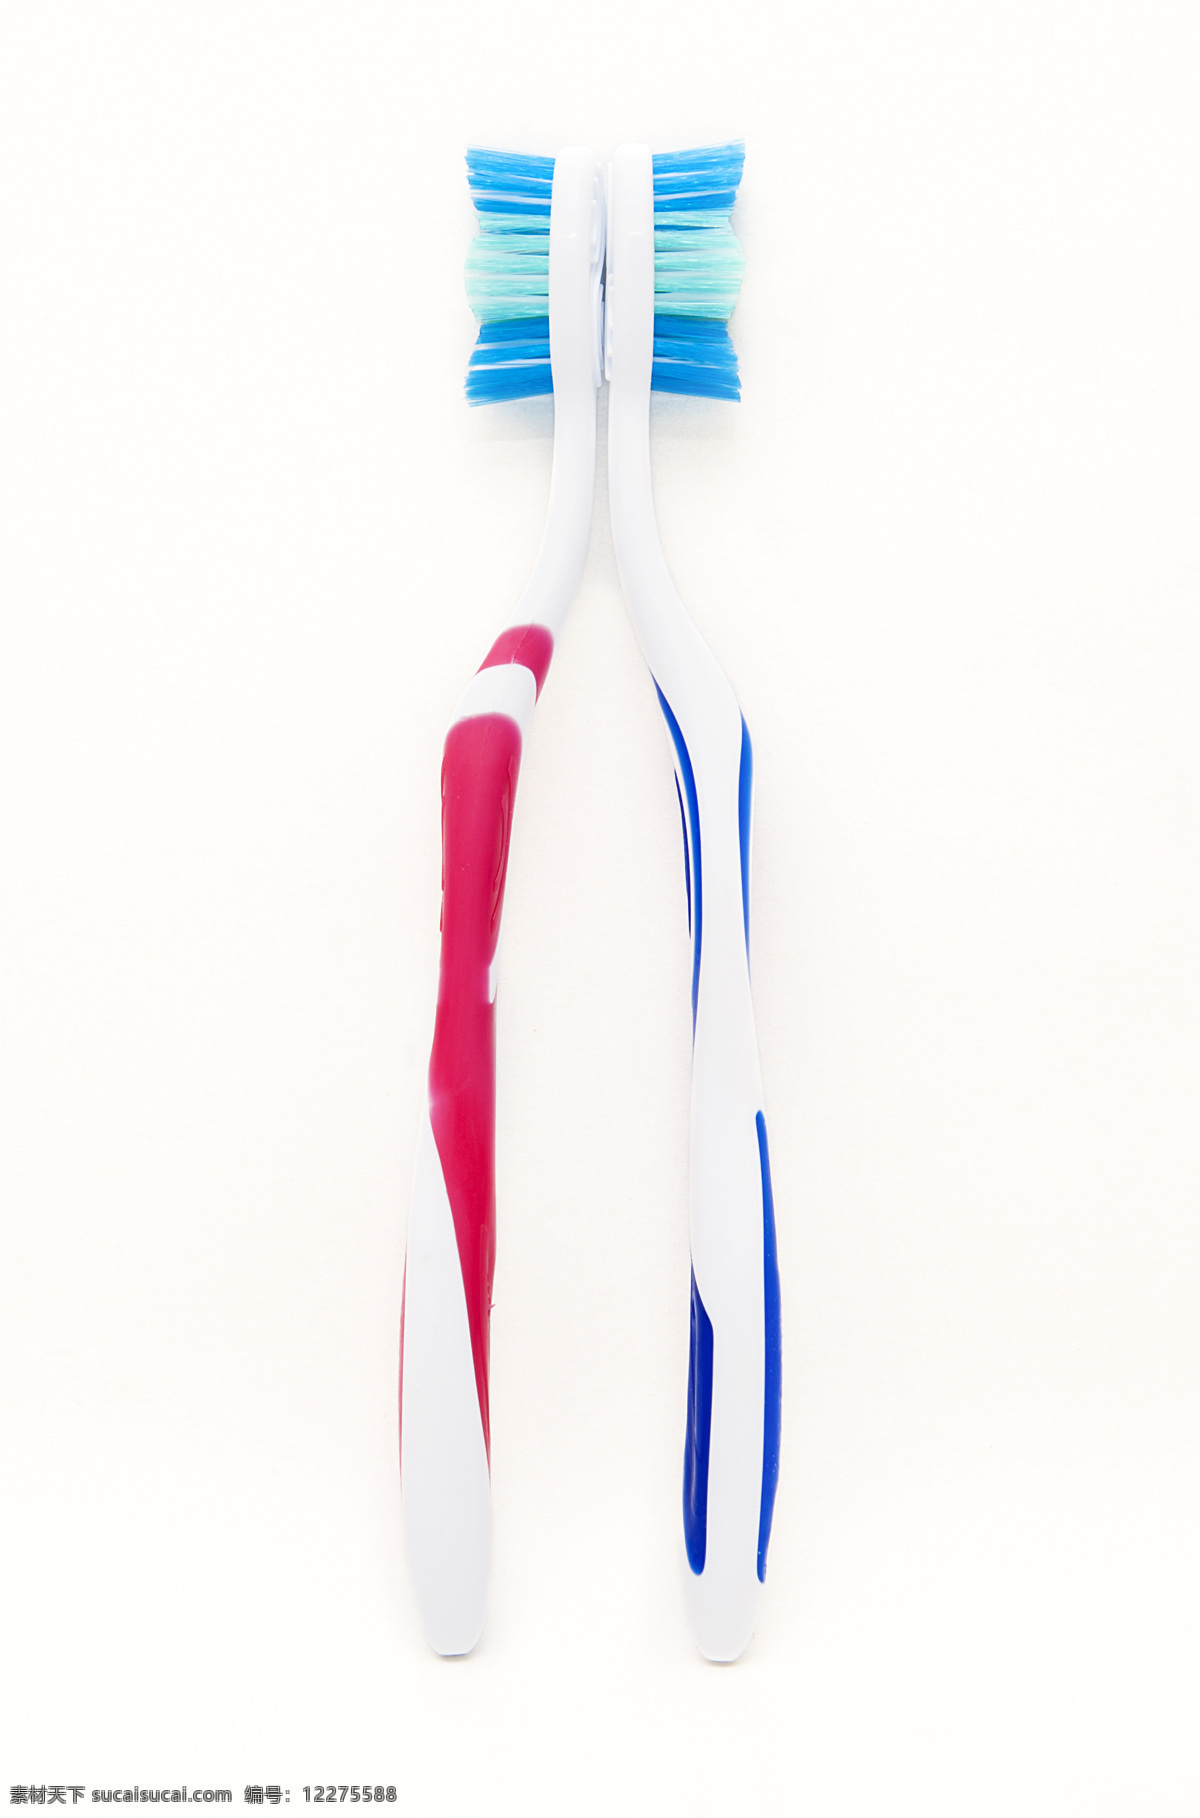 牙膏 洗漱 洗漱用品 刷牙 护牙 洁齿 牙刷素材 牙刷背景 牙刷特写 生活百科 生活素材